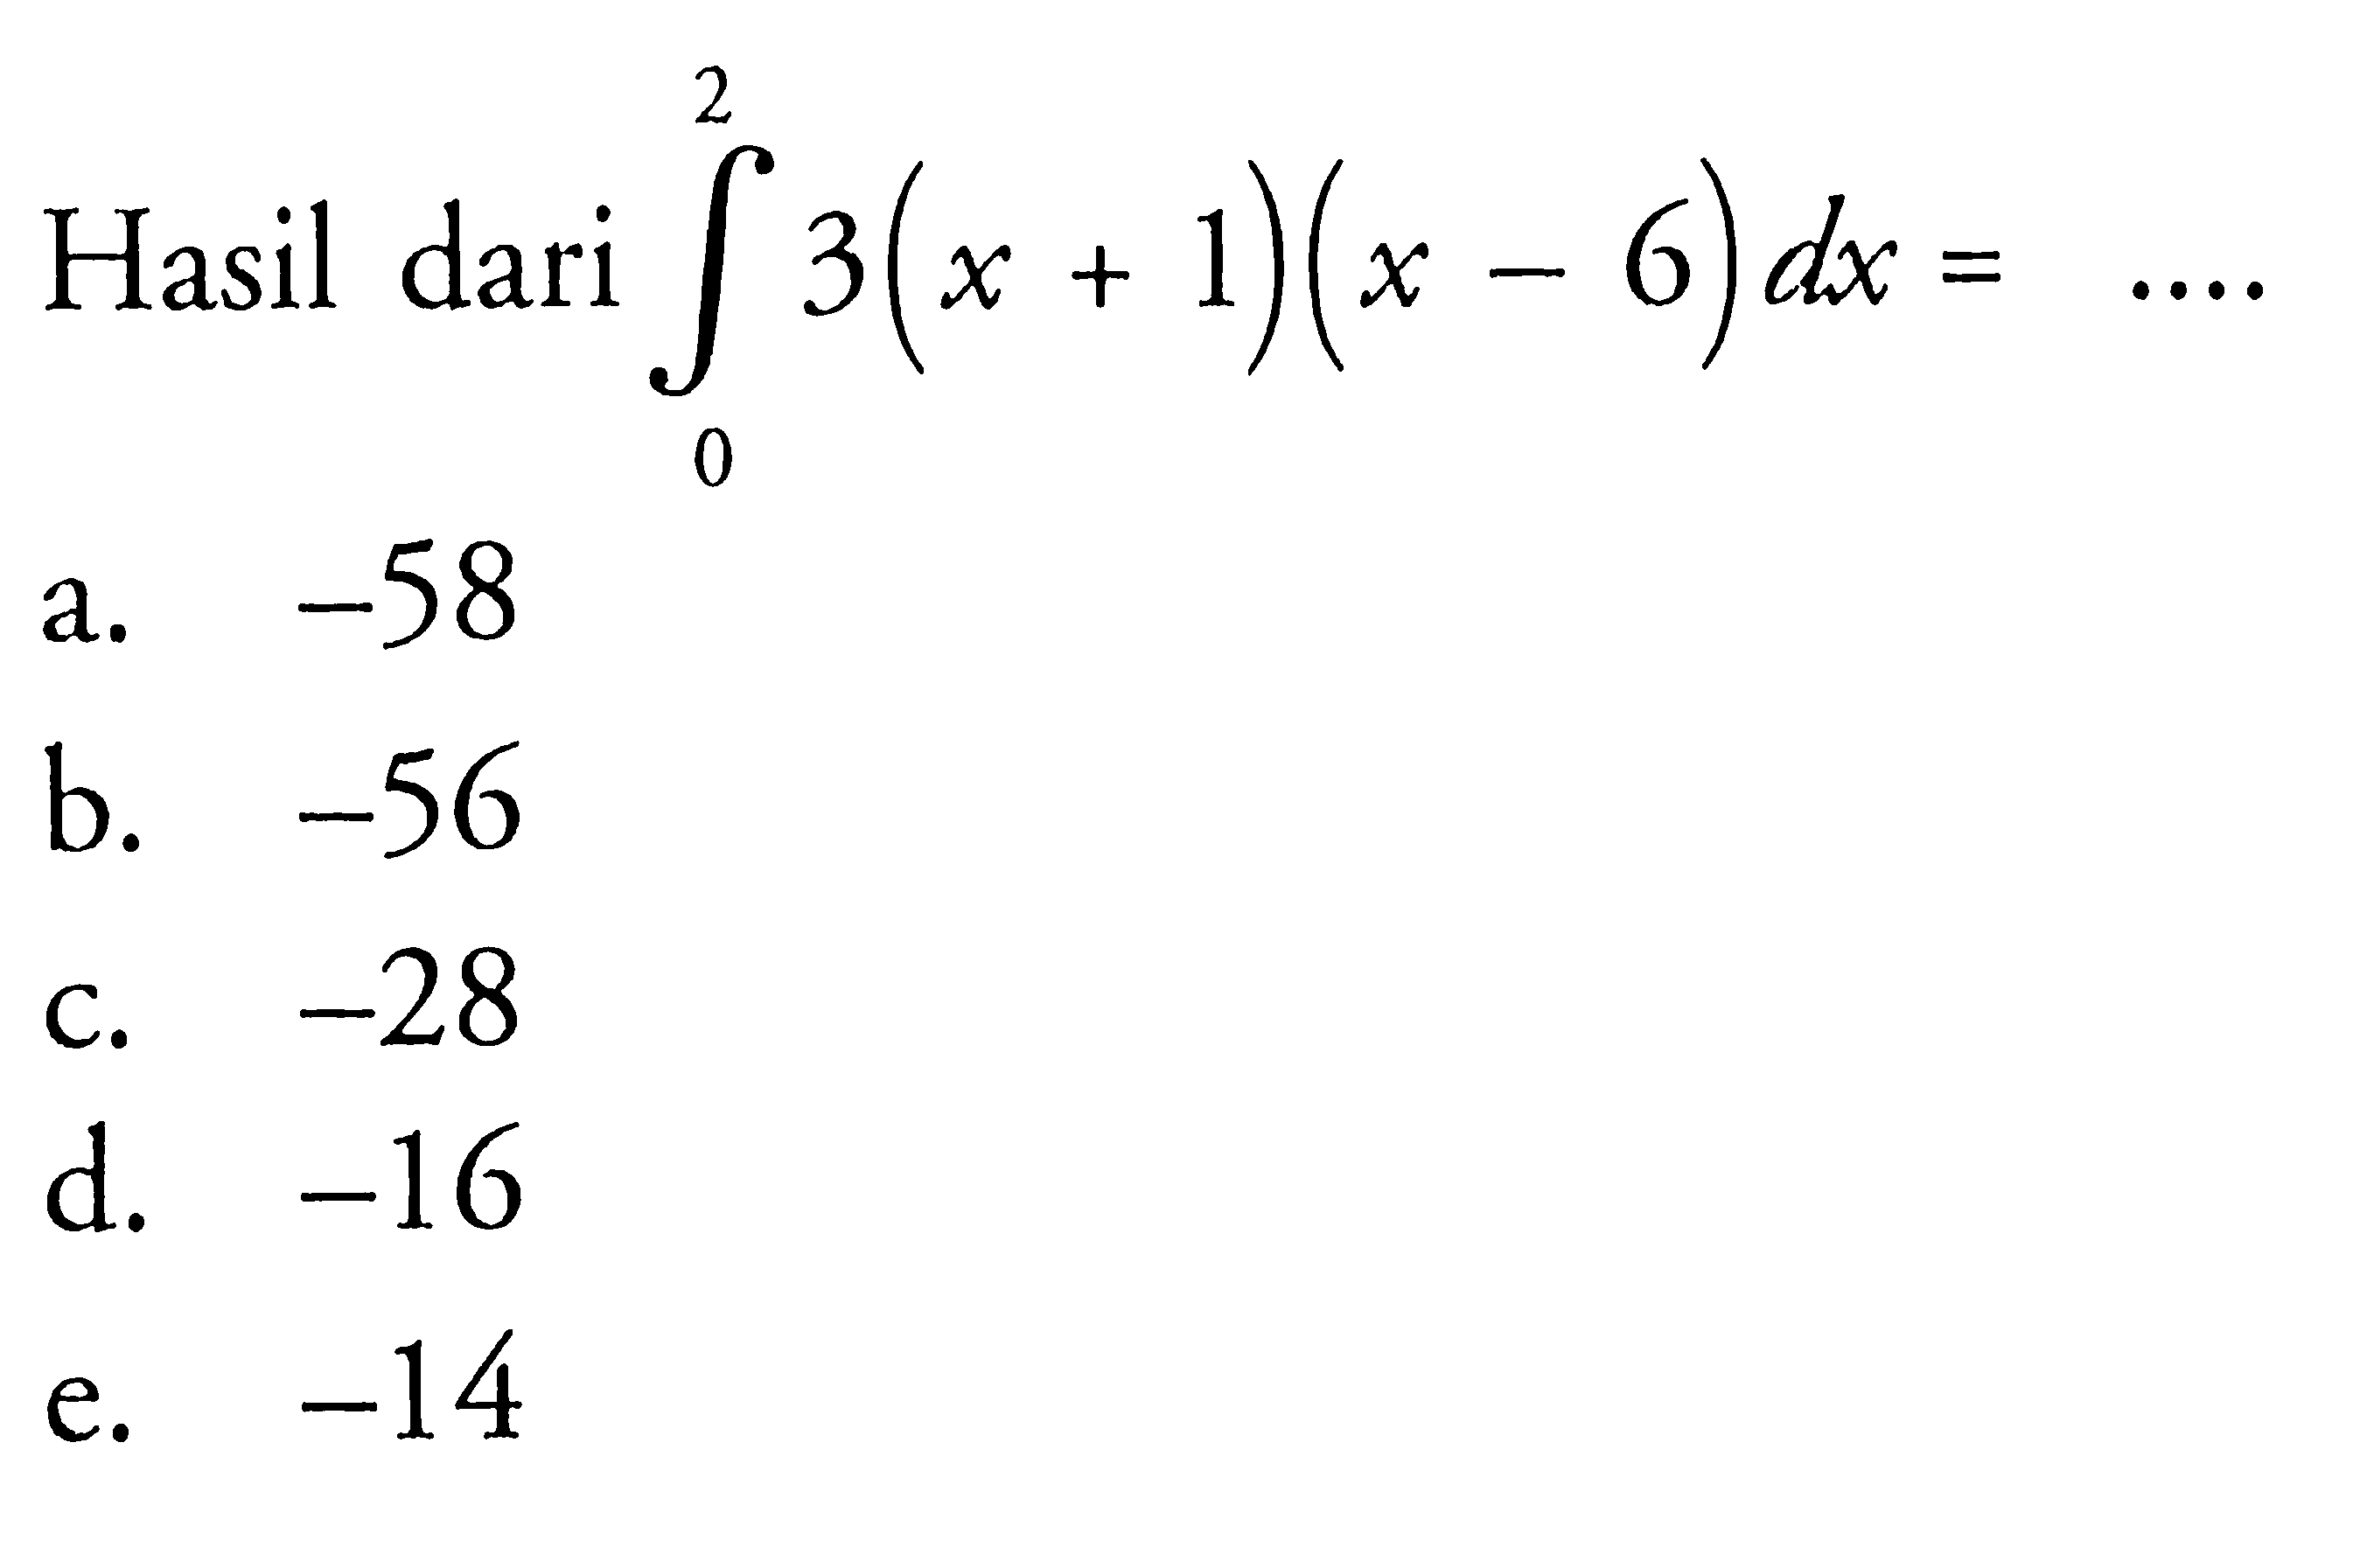 Hasil dari integral 0 2 3(x+1)(x-6) dx=.... 